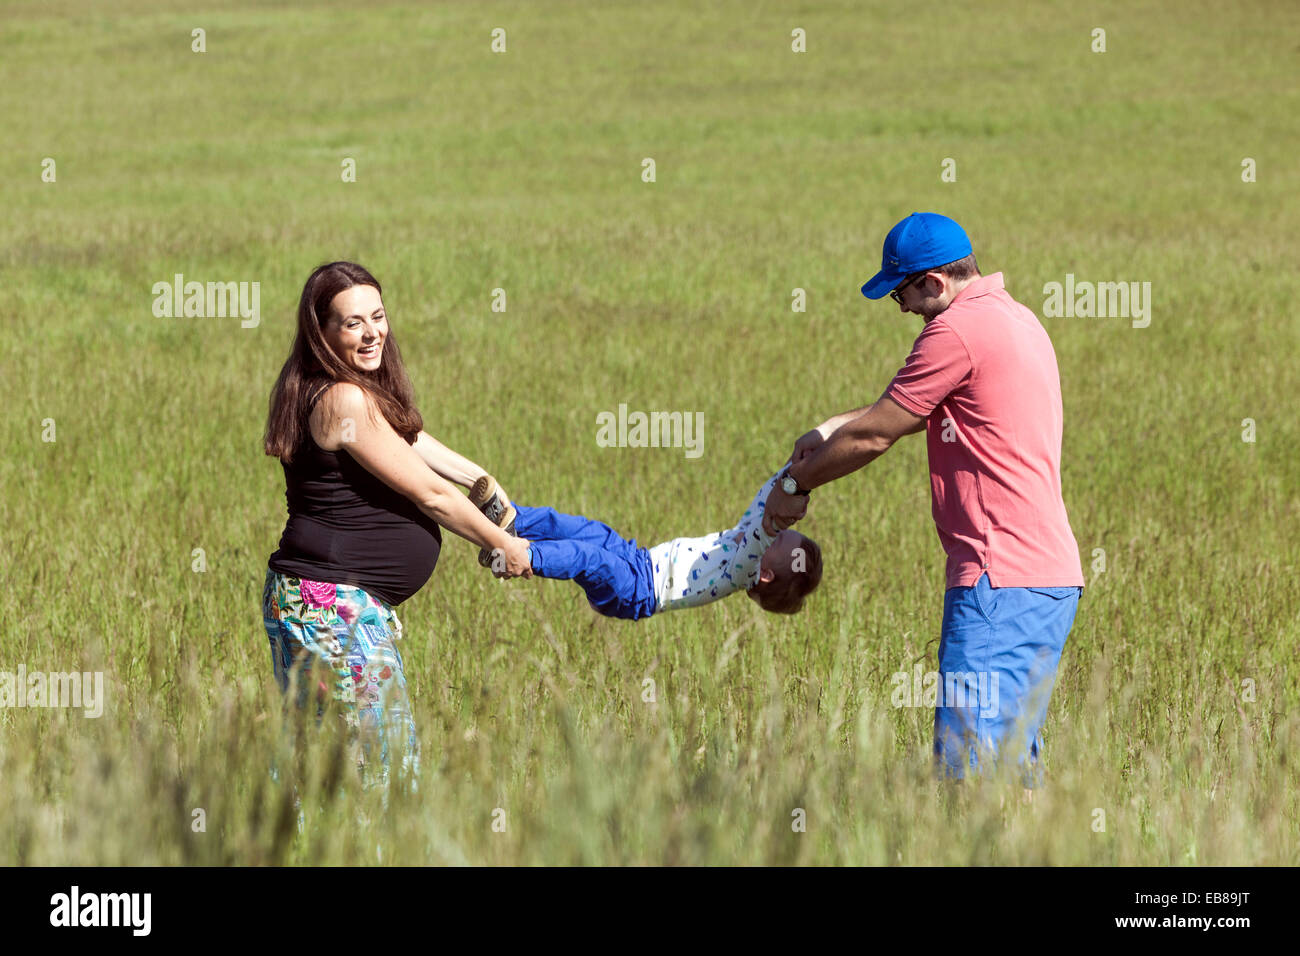 Una familia feliz, una mujer embarazada con su marido y su niño a pasar tiempo juntos y jugar a juegos en una pradera de verano Foto de stock